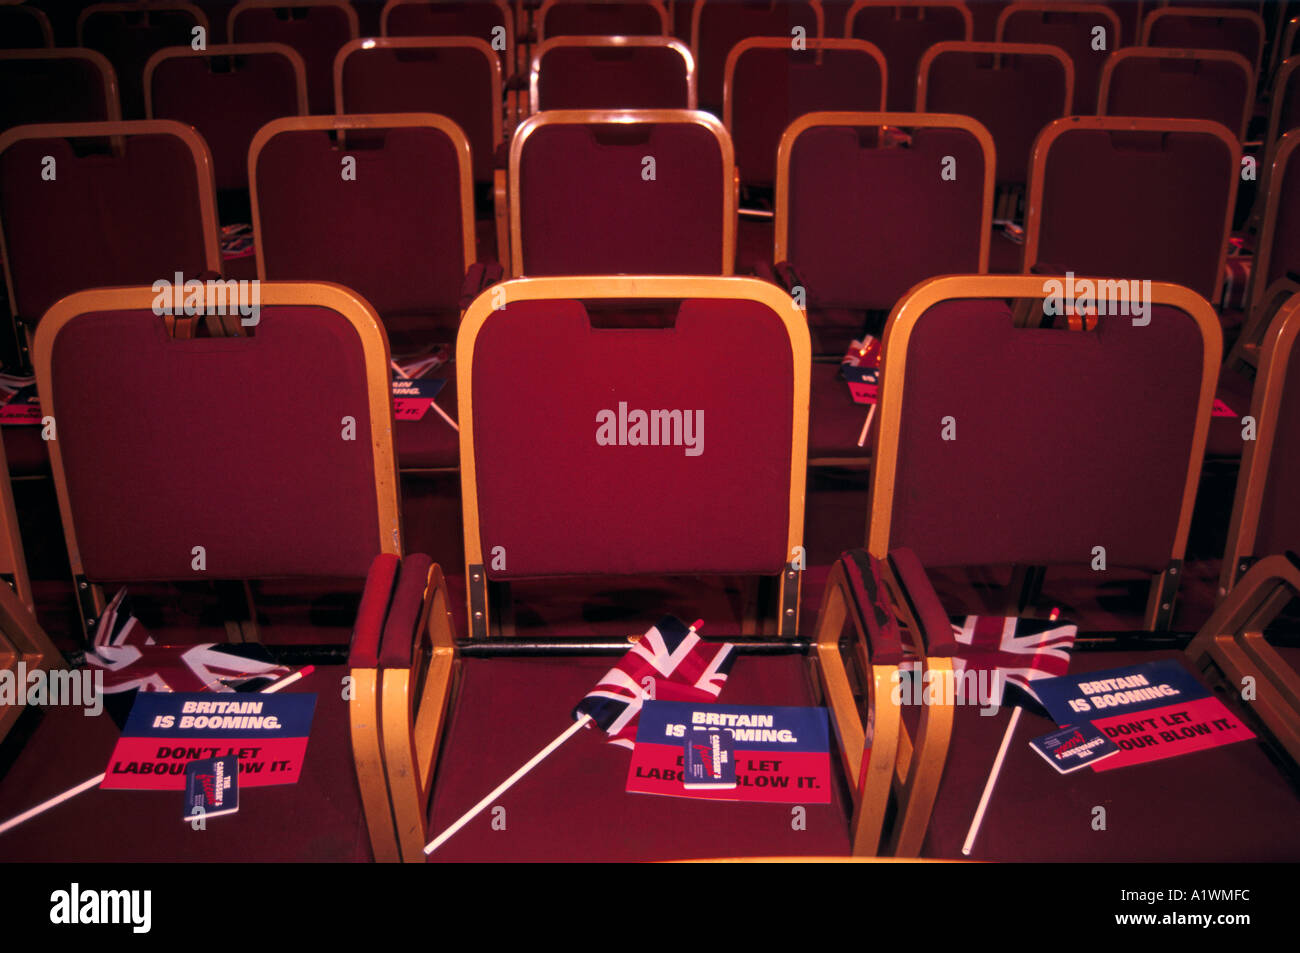 1997 ALLGEMEINE WAHL TORY RALLYE ALBERT HALL. Rote Stühle mit Union Jacks und Broschüre mit dem Titel Großbritannien boomt. Stockfoto